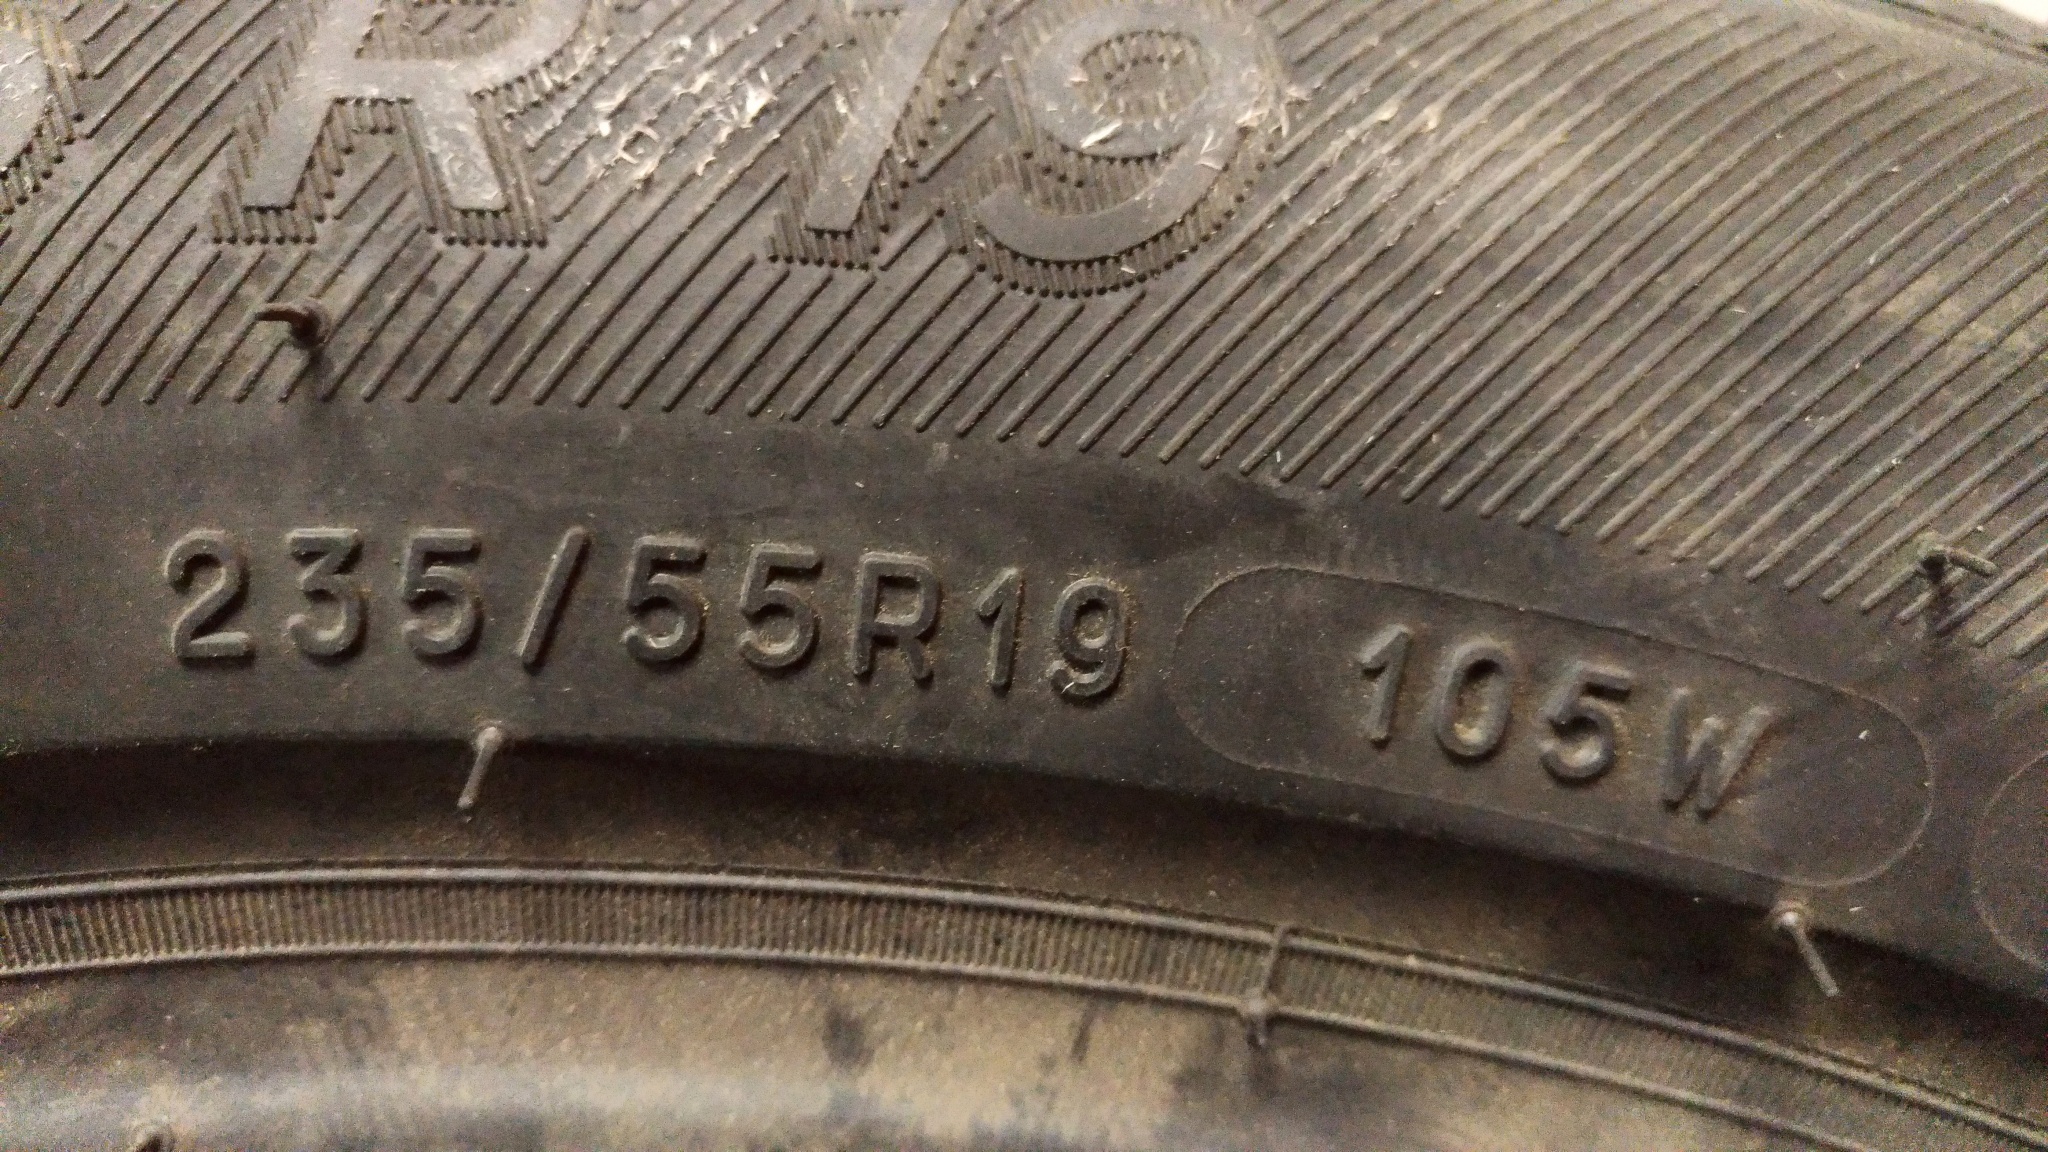 Шины Michelin 235/55 r19 всесезонные. Раритетная резина Мишлен 1926г. Дата выпуска на шинах Мишлен. Оригинальная Дата выпуска шин Мишлен. Где на шинах указан год выпуска фото